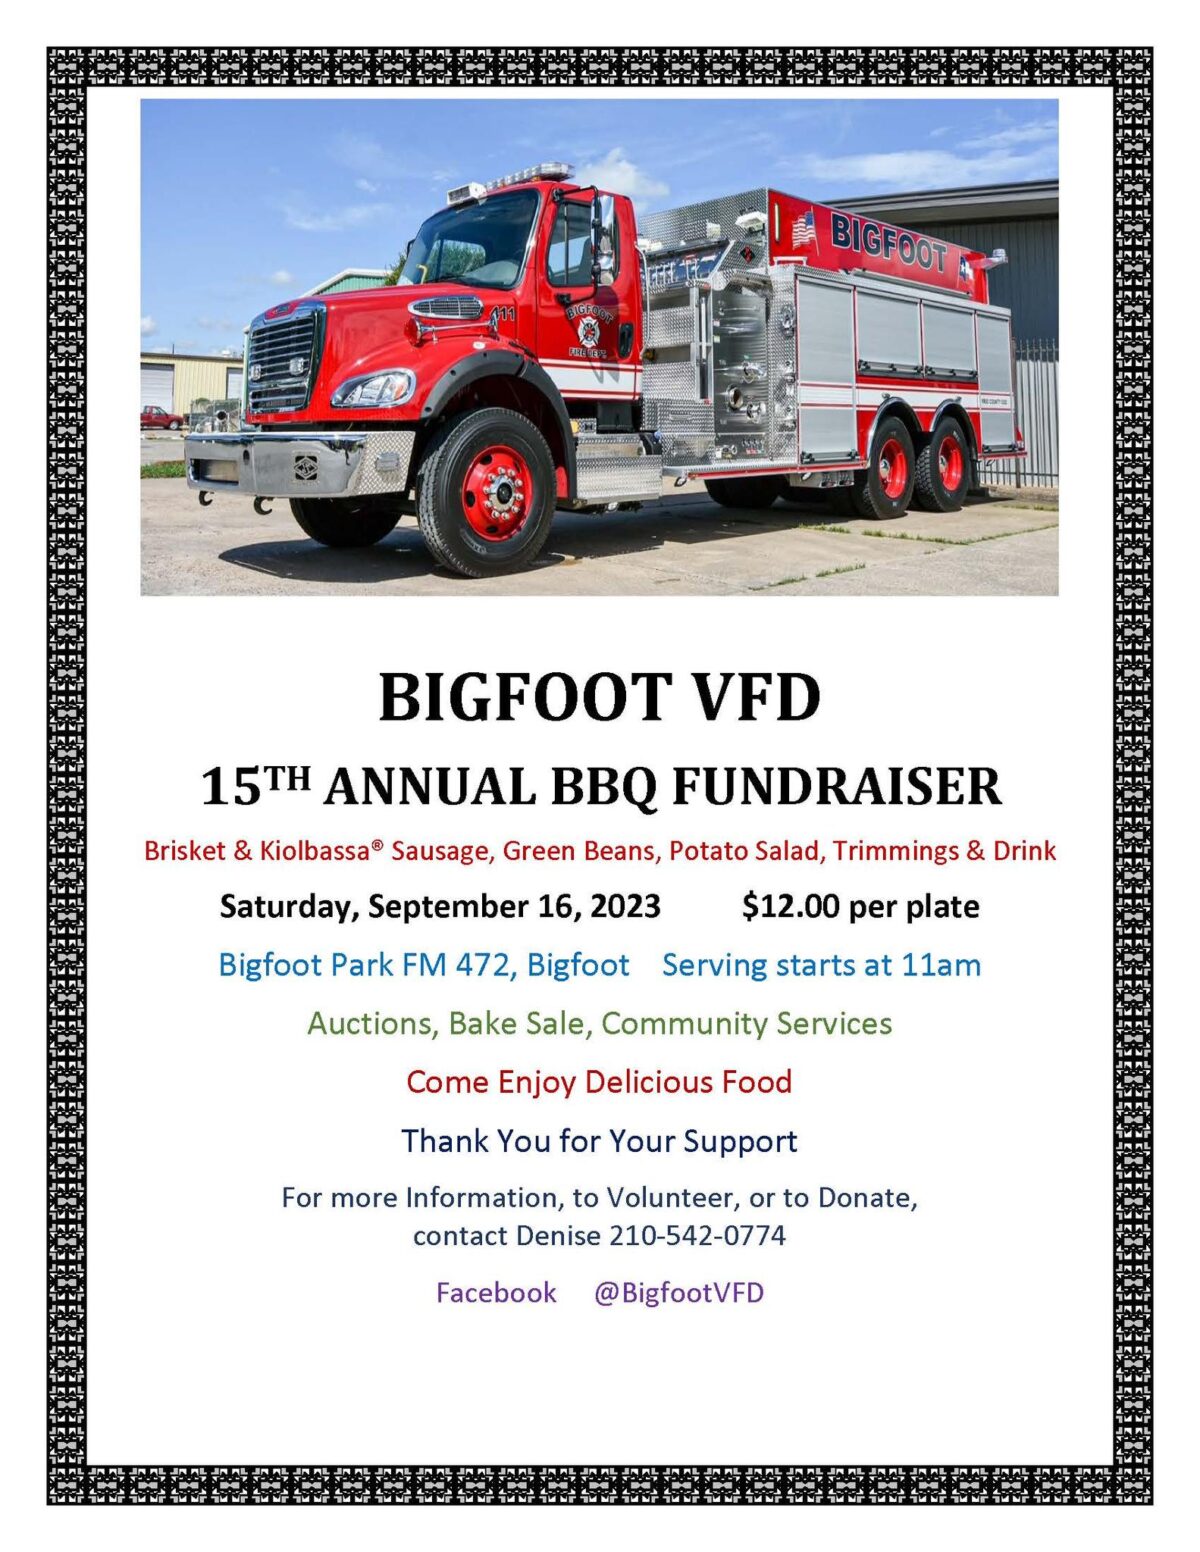 Bigfoot VFD to host BBQ fundraiser Sept. 16